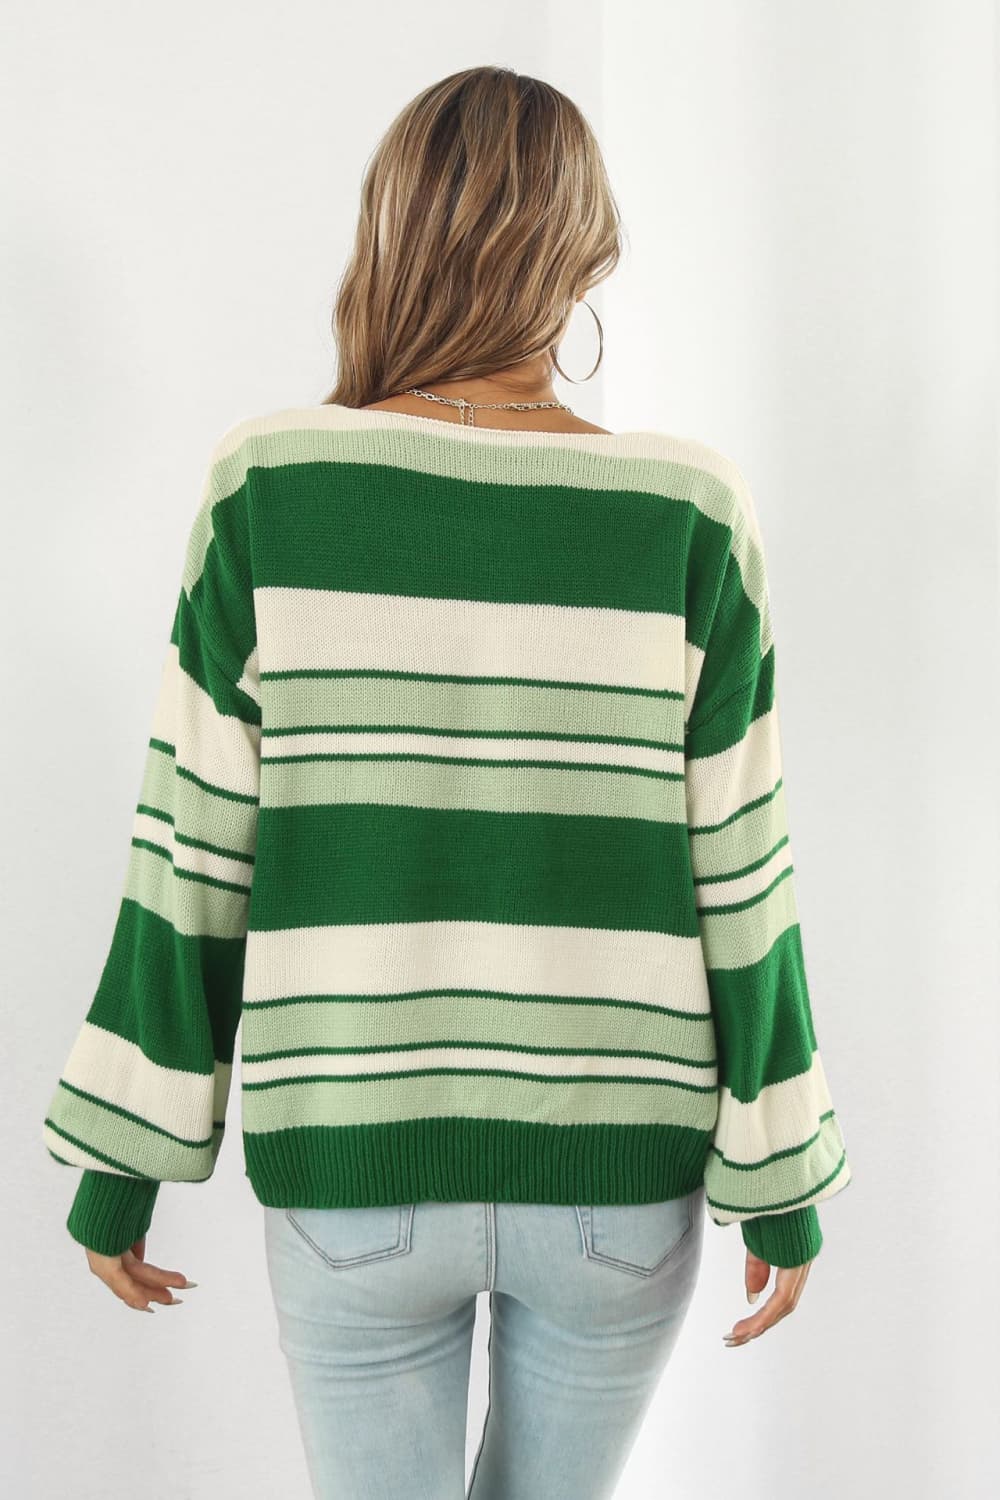 ZELDAlea Striped V-Neck Dropped Shoulder Sweater